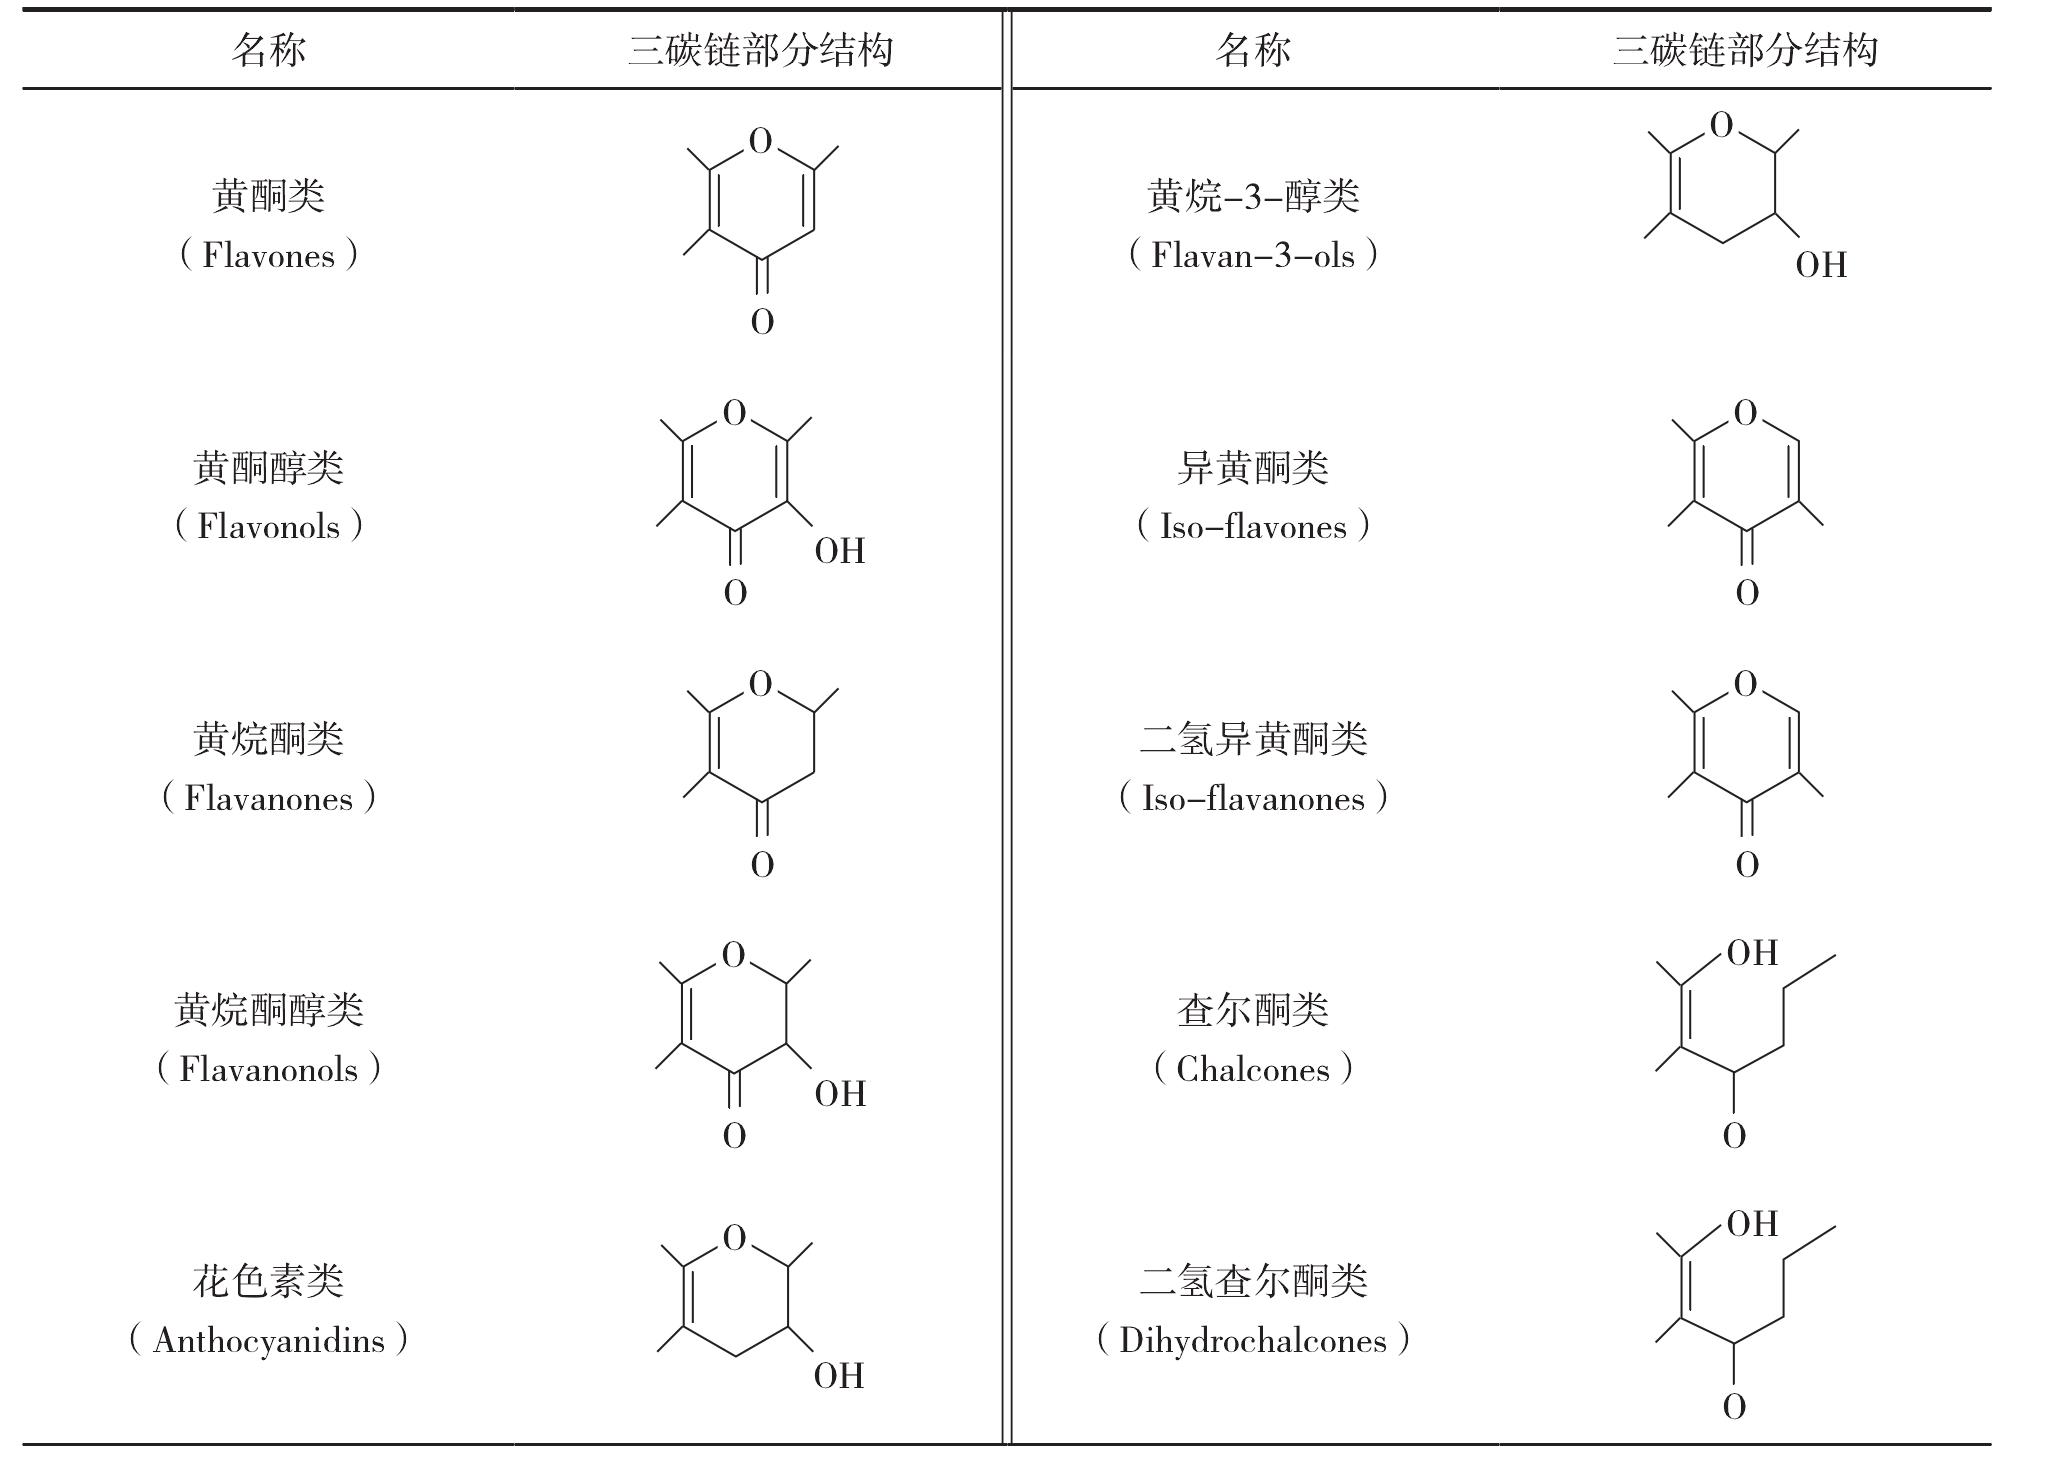 1.2.1 黄酮类化合物的基本结构与分类